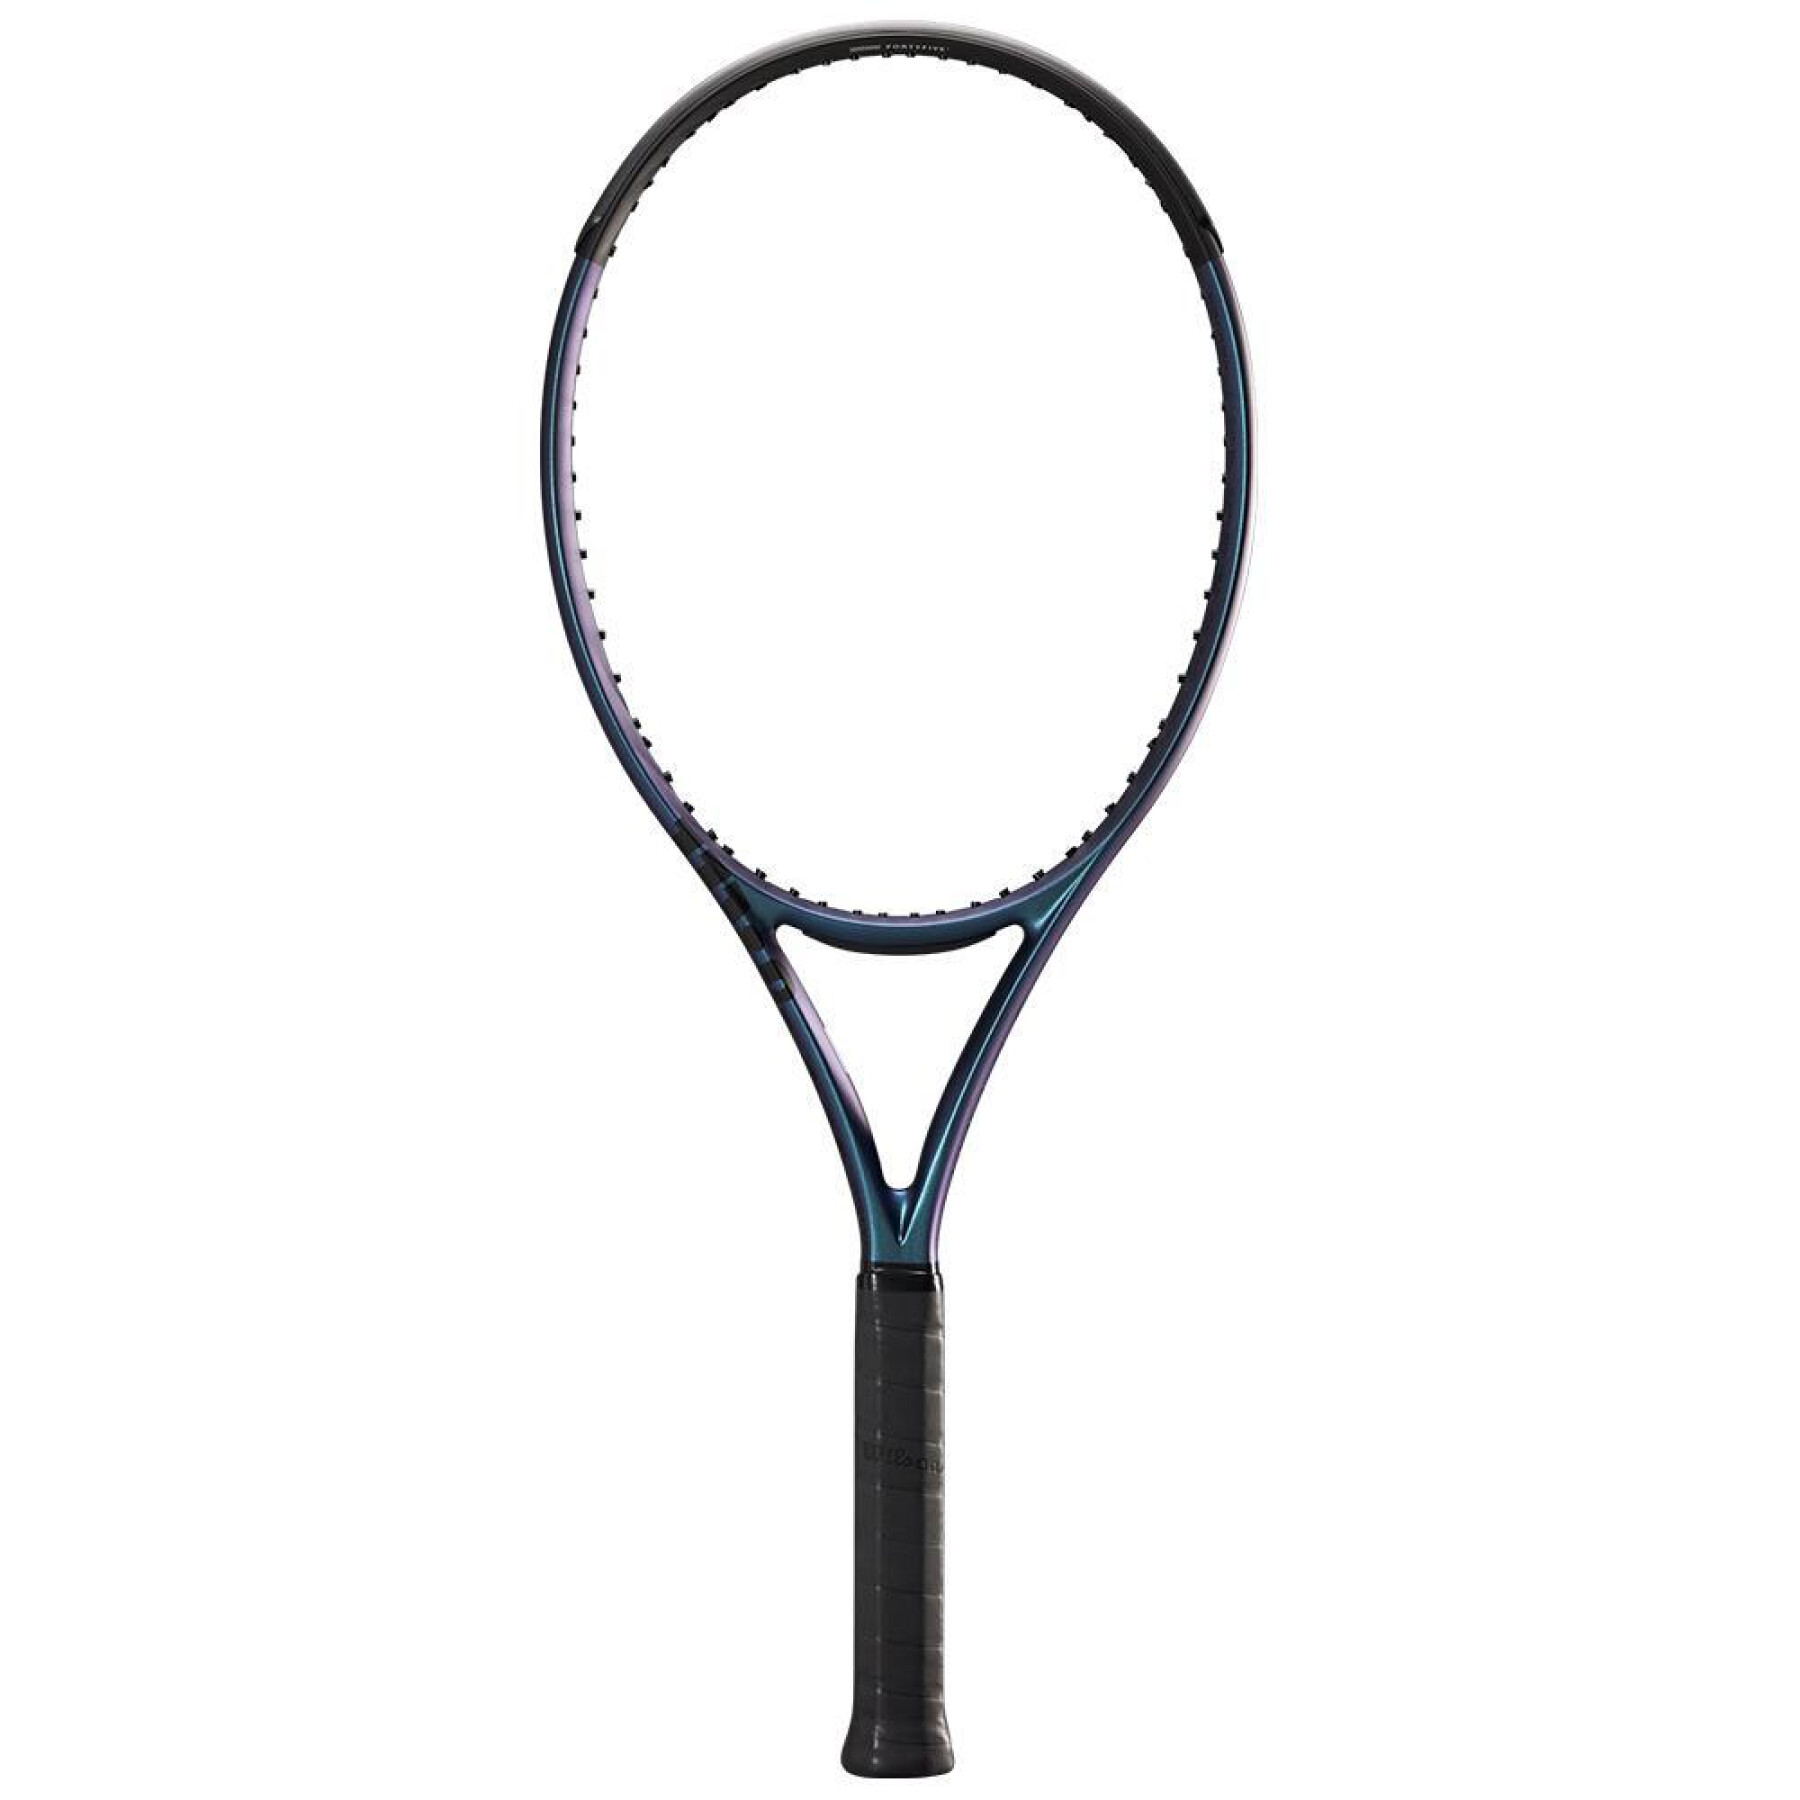 Tennis racket Wilson Ultra 108 V4.0